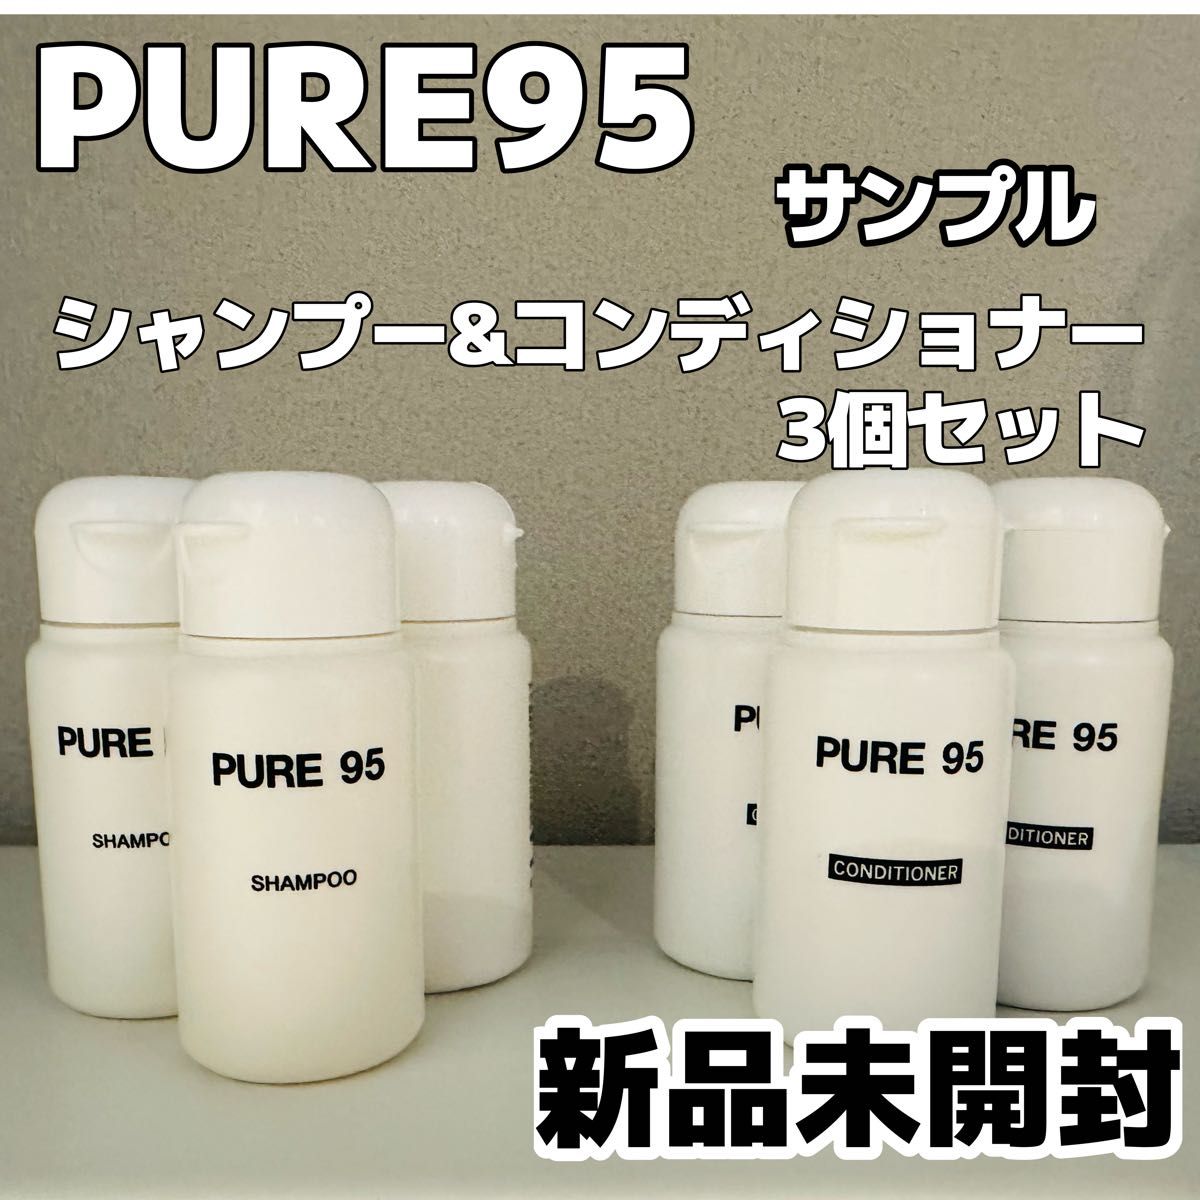 【新品未開封】PURE95 ピュア95 シャンプー コンディショナー セット サンプル 試供品 トラベル用 パーミングジャパン 